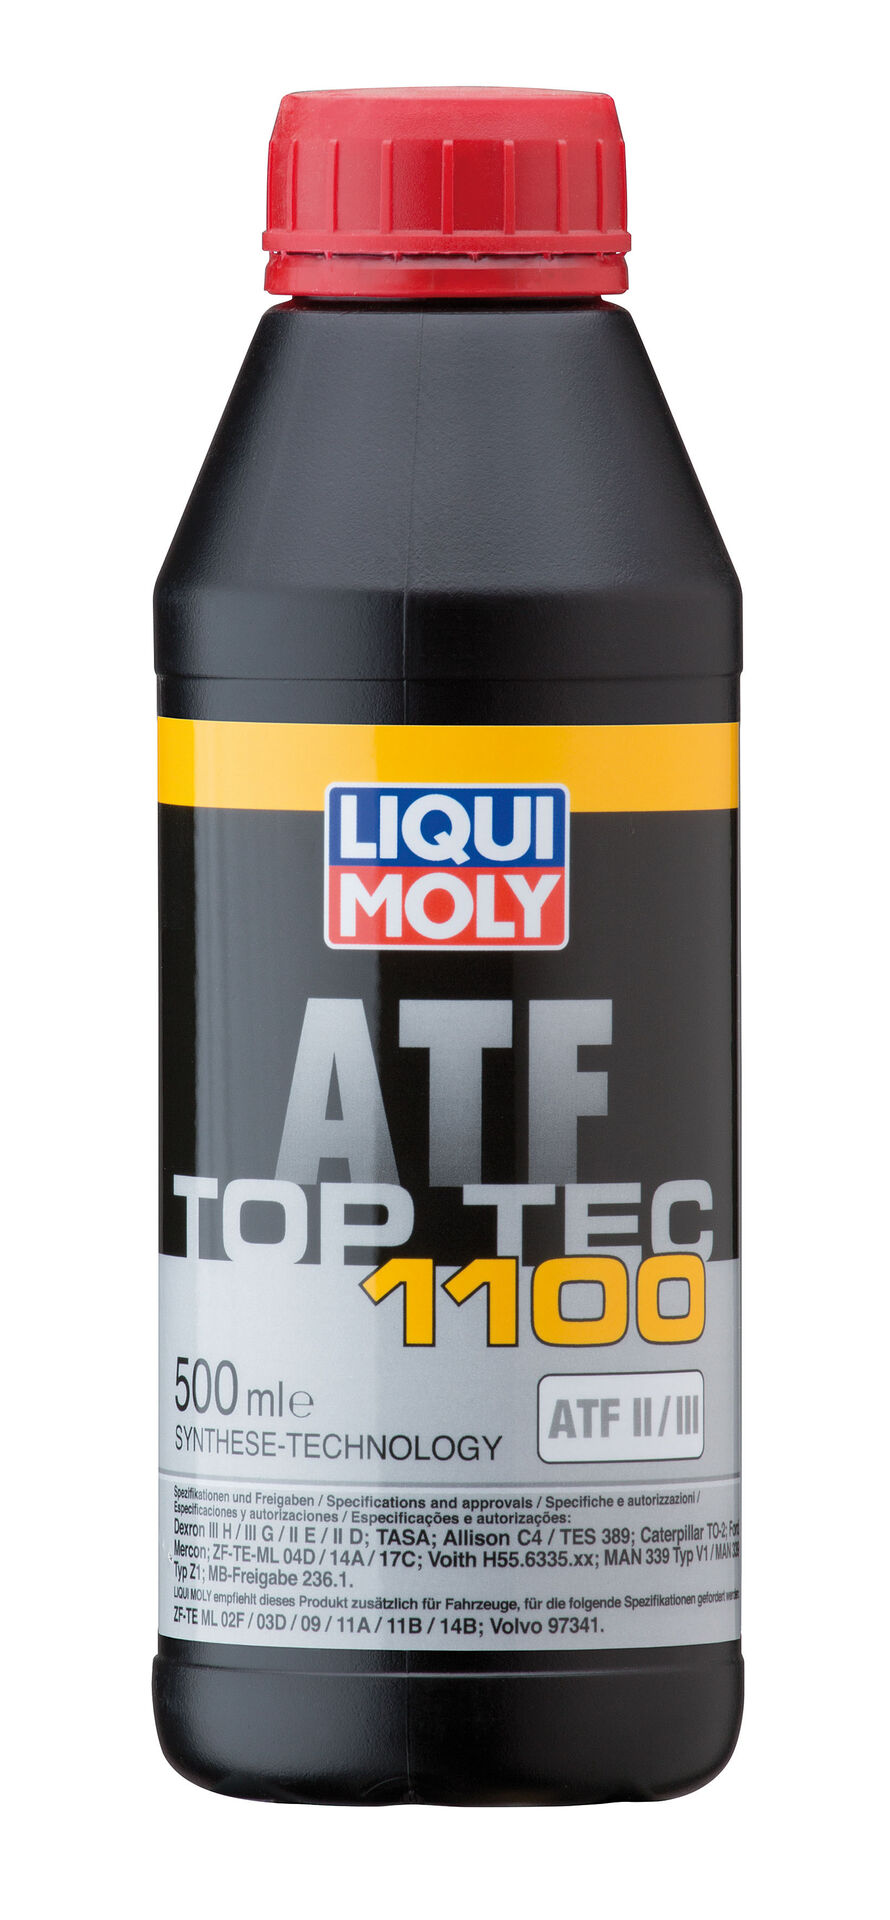 LIQUI-MOLY Getriebeöl Top Tec ATF 1100 500 ml 